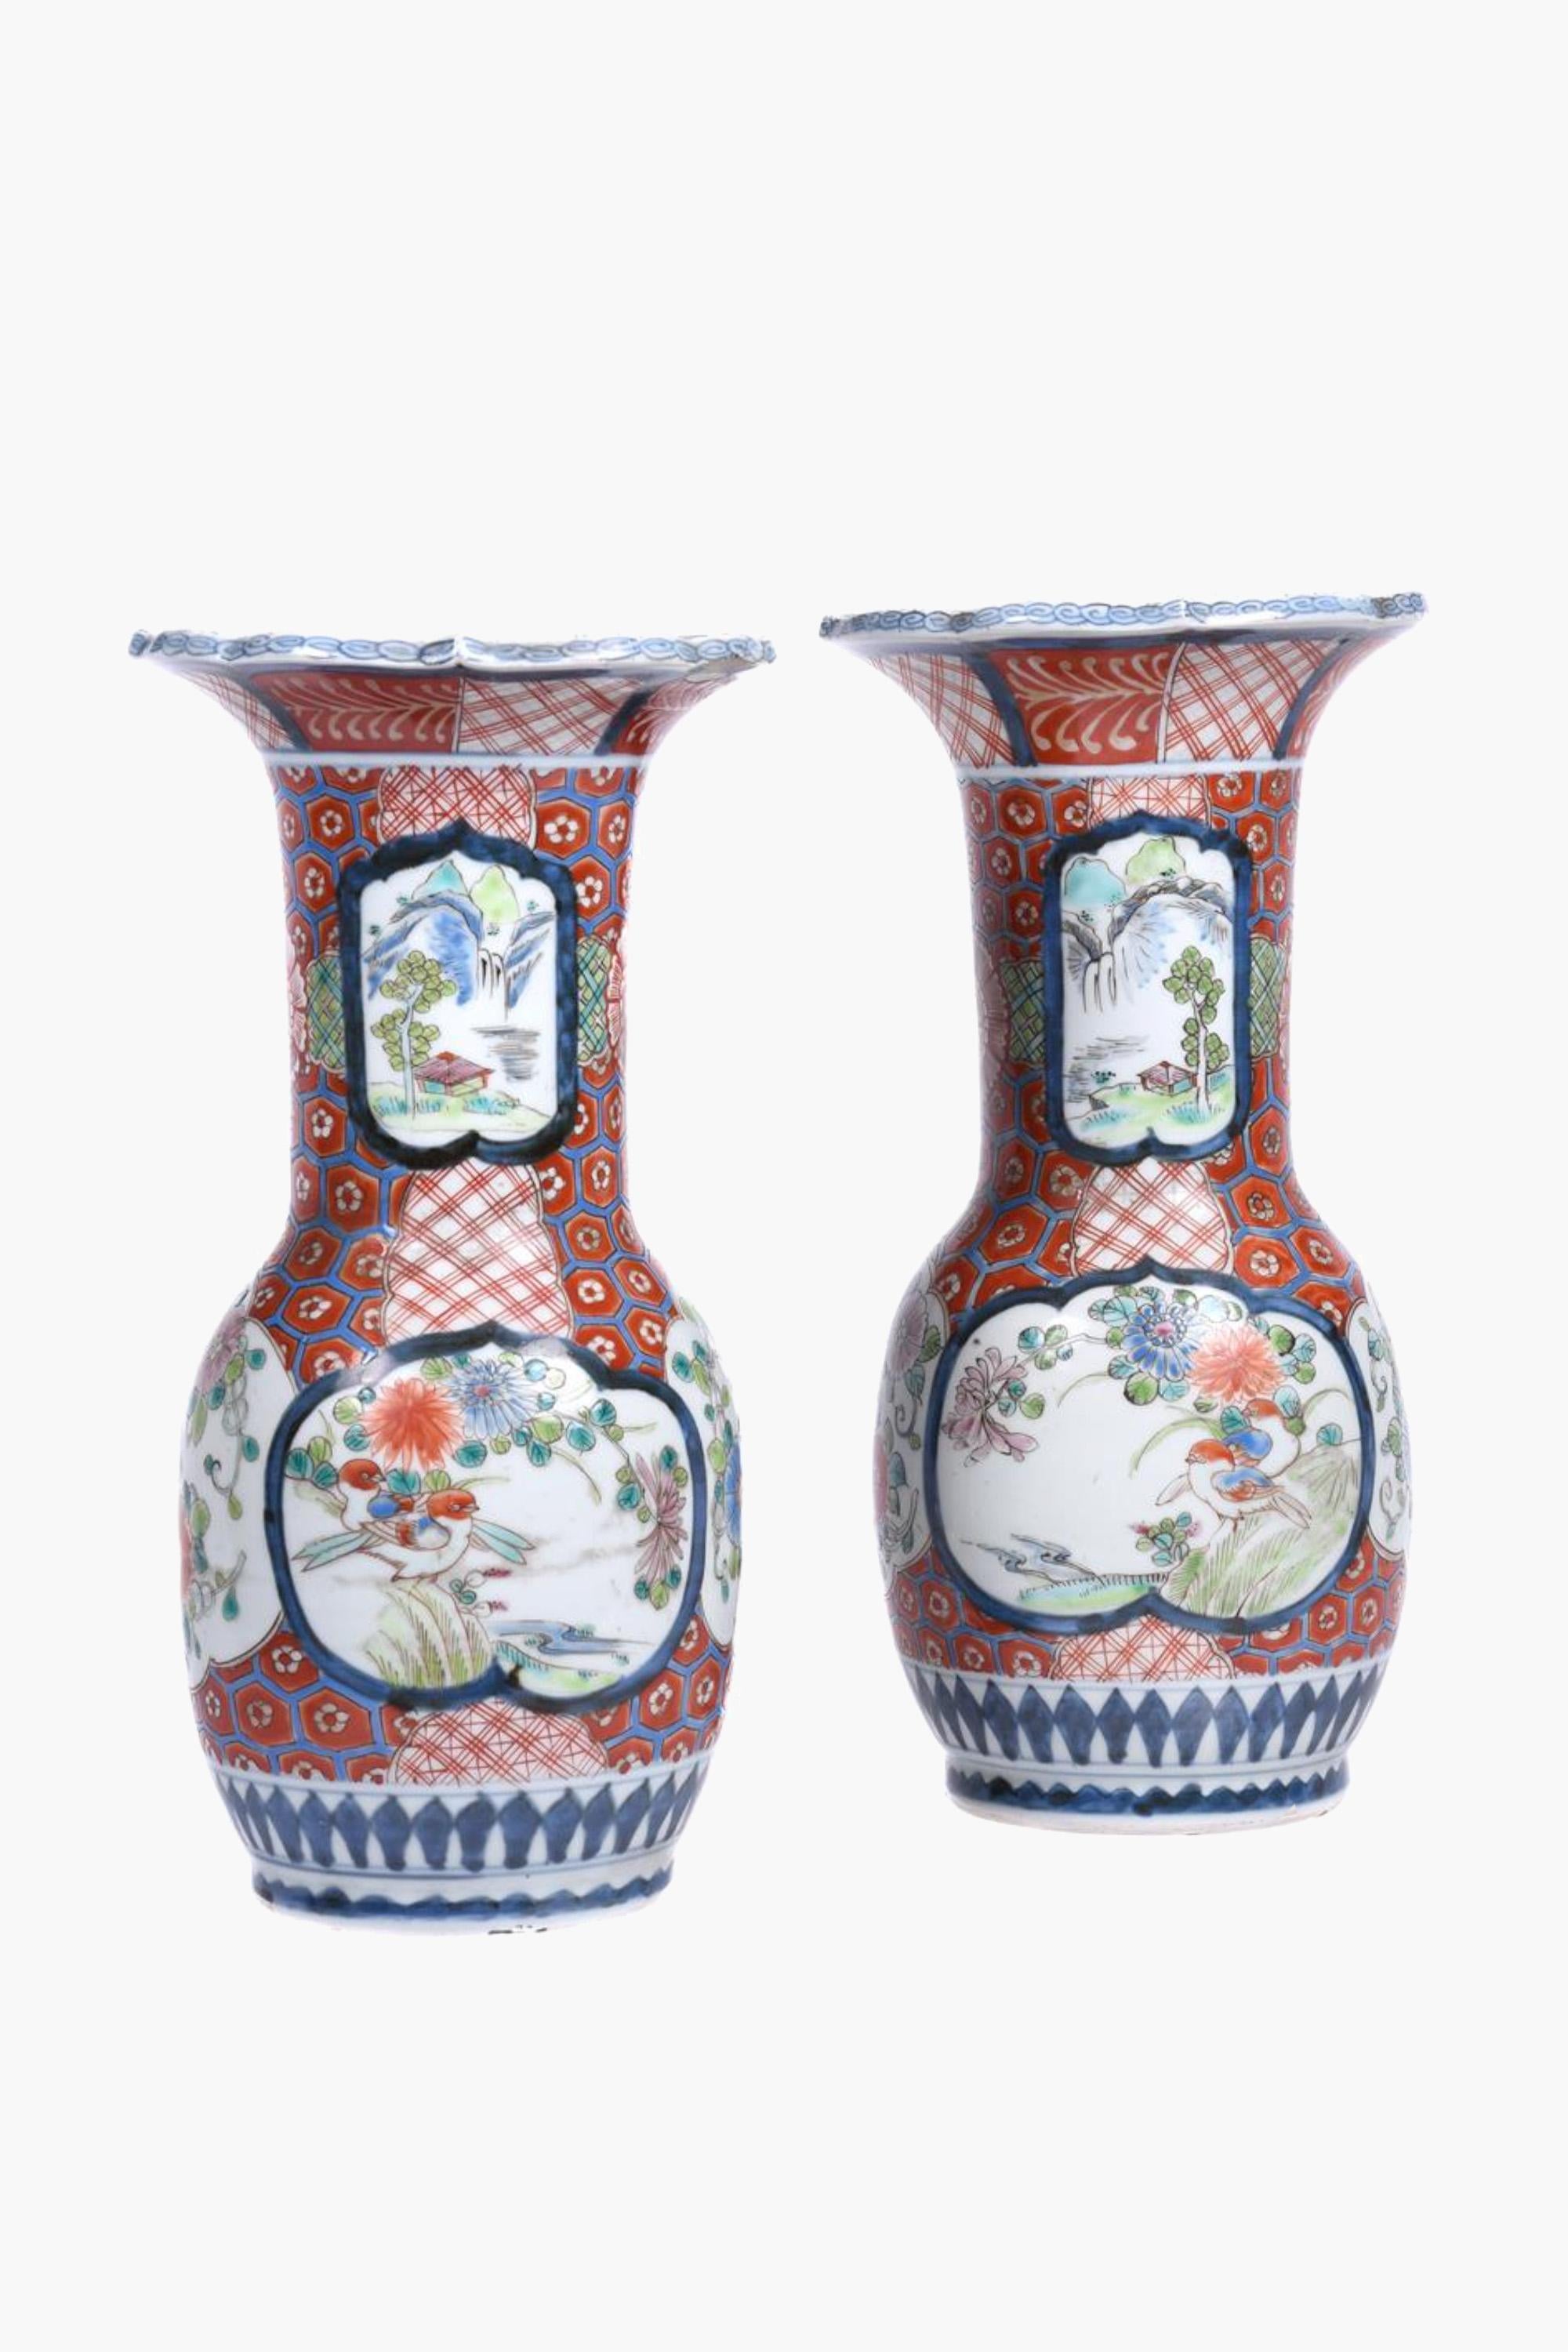 Ein Paar antiker japanischer Arita-Imari-Porzellanvasen, die auch als Lampen erhältlich sind.

Japanische Porzellanvasen aus der Meiji-Zeit (1868-1913), verziert mit leuchtenden Emaillen in Imari-Farben. Der Korpus ist mit abwechselnden Vignetten